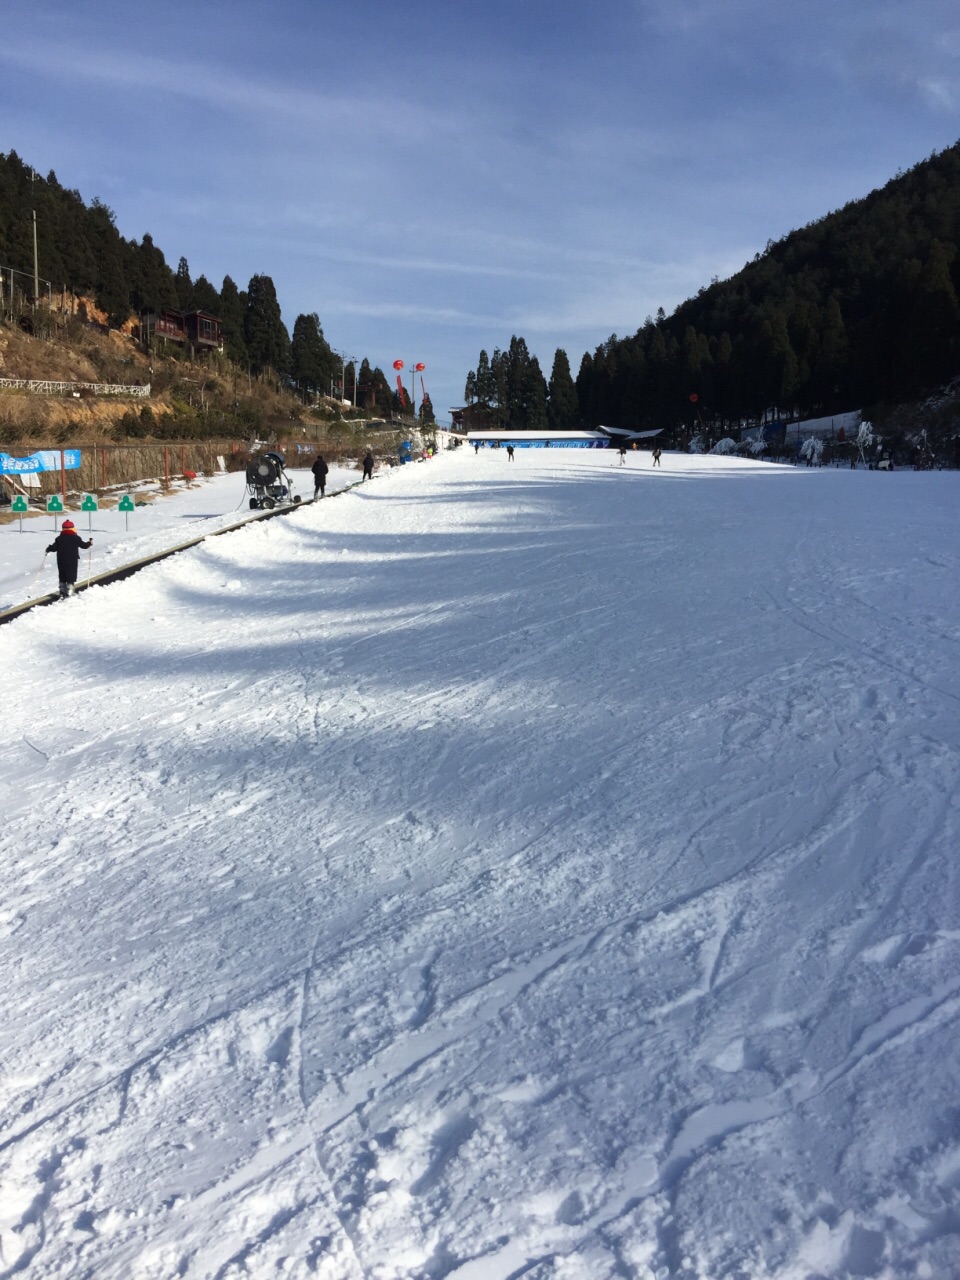 文成绿水尖滑雪场图片